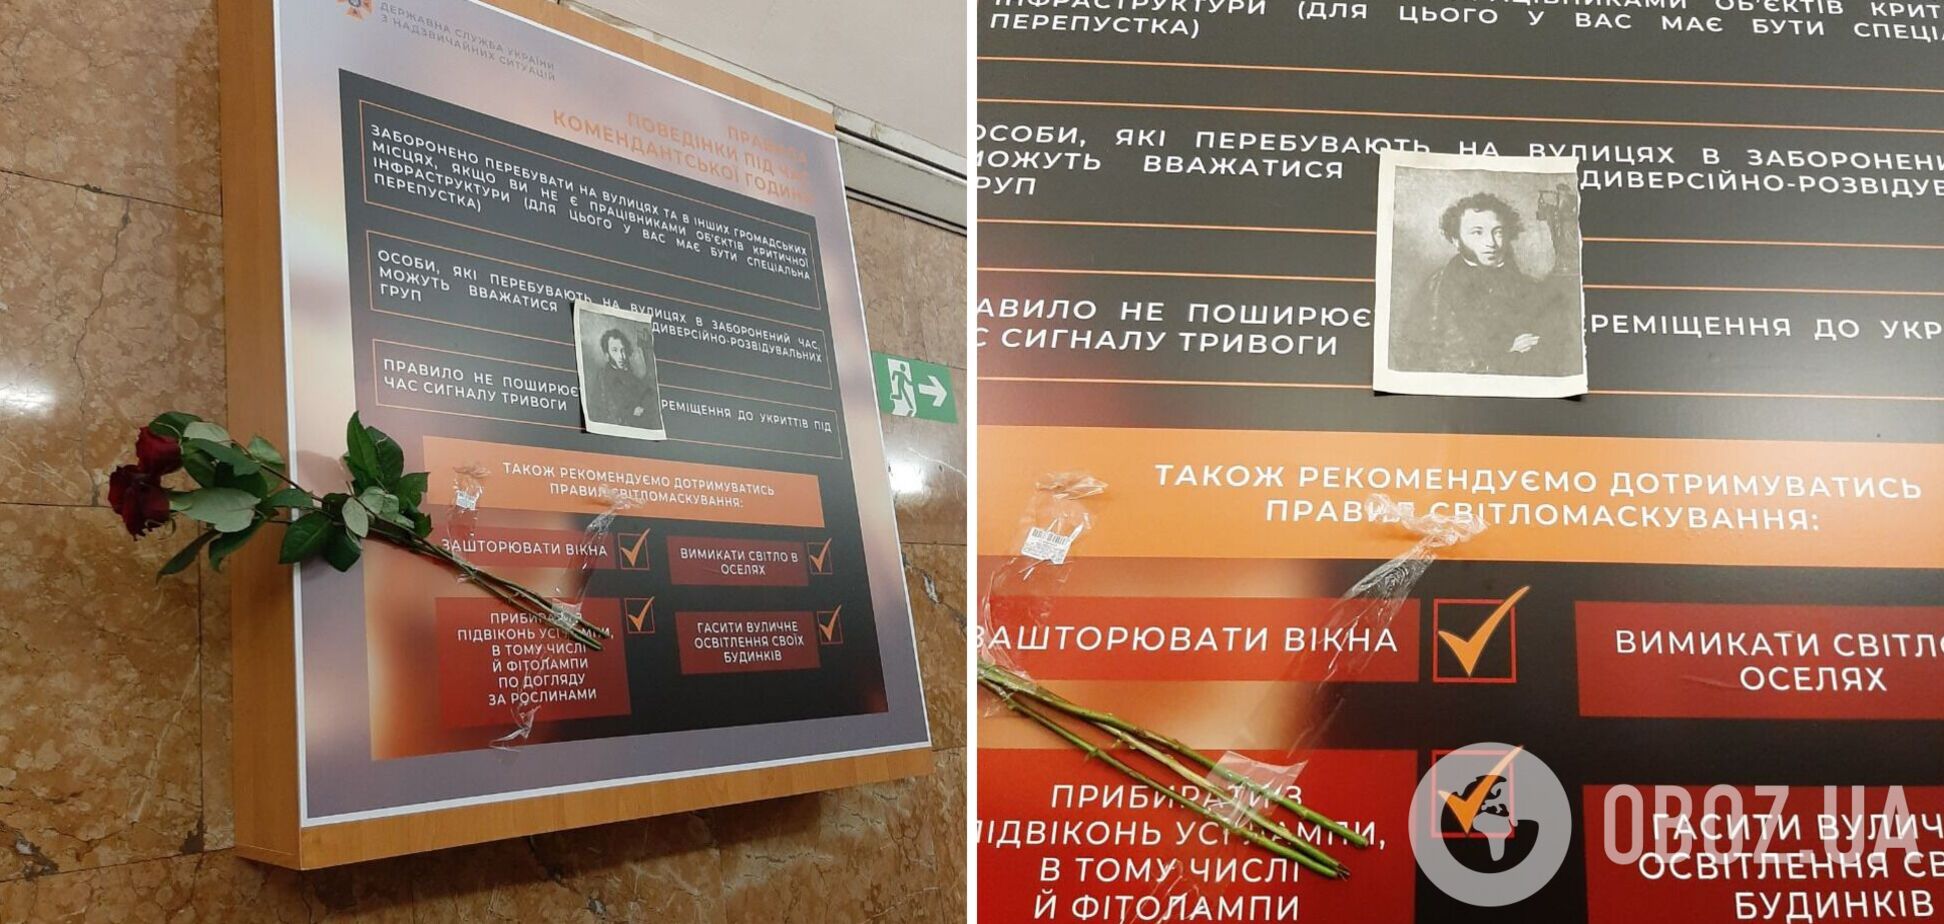 В Киеве на станцию метро 'Университет' принесли изображение Пушкина и цветы на место, к которому стоял его бюст. Эксклюзивные фото